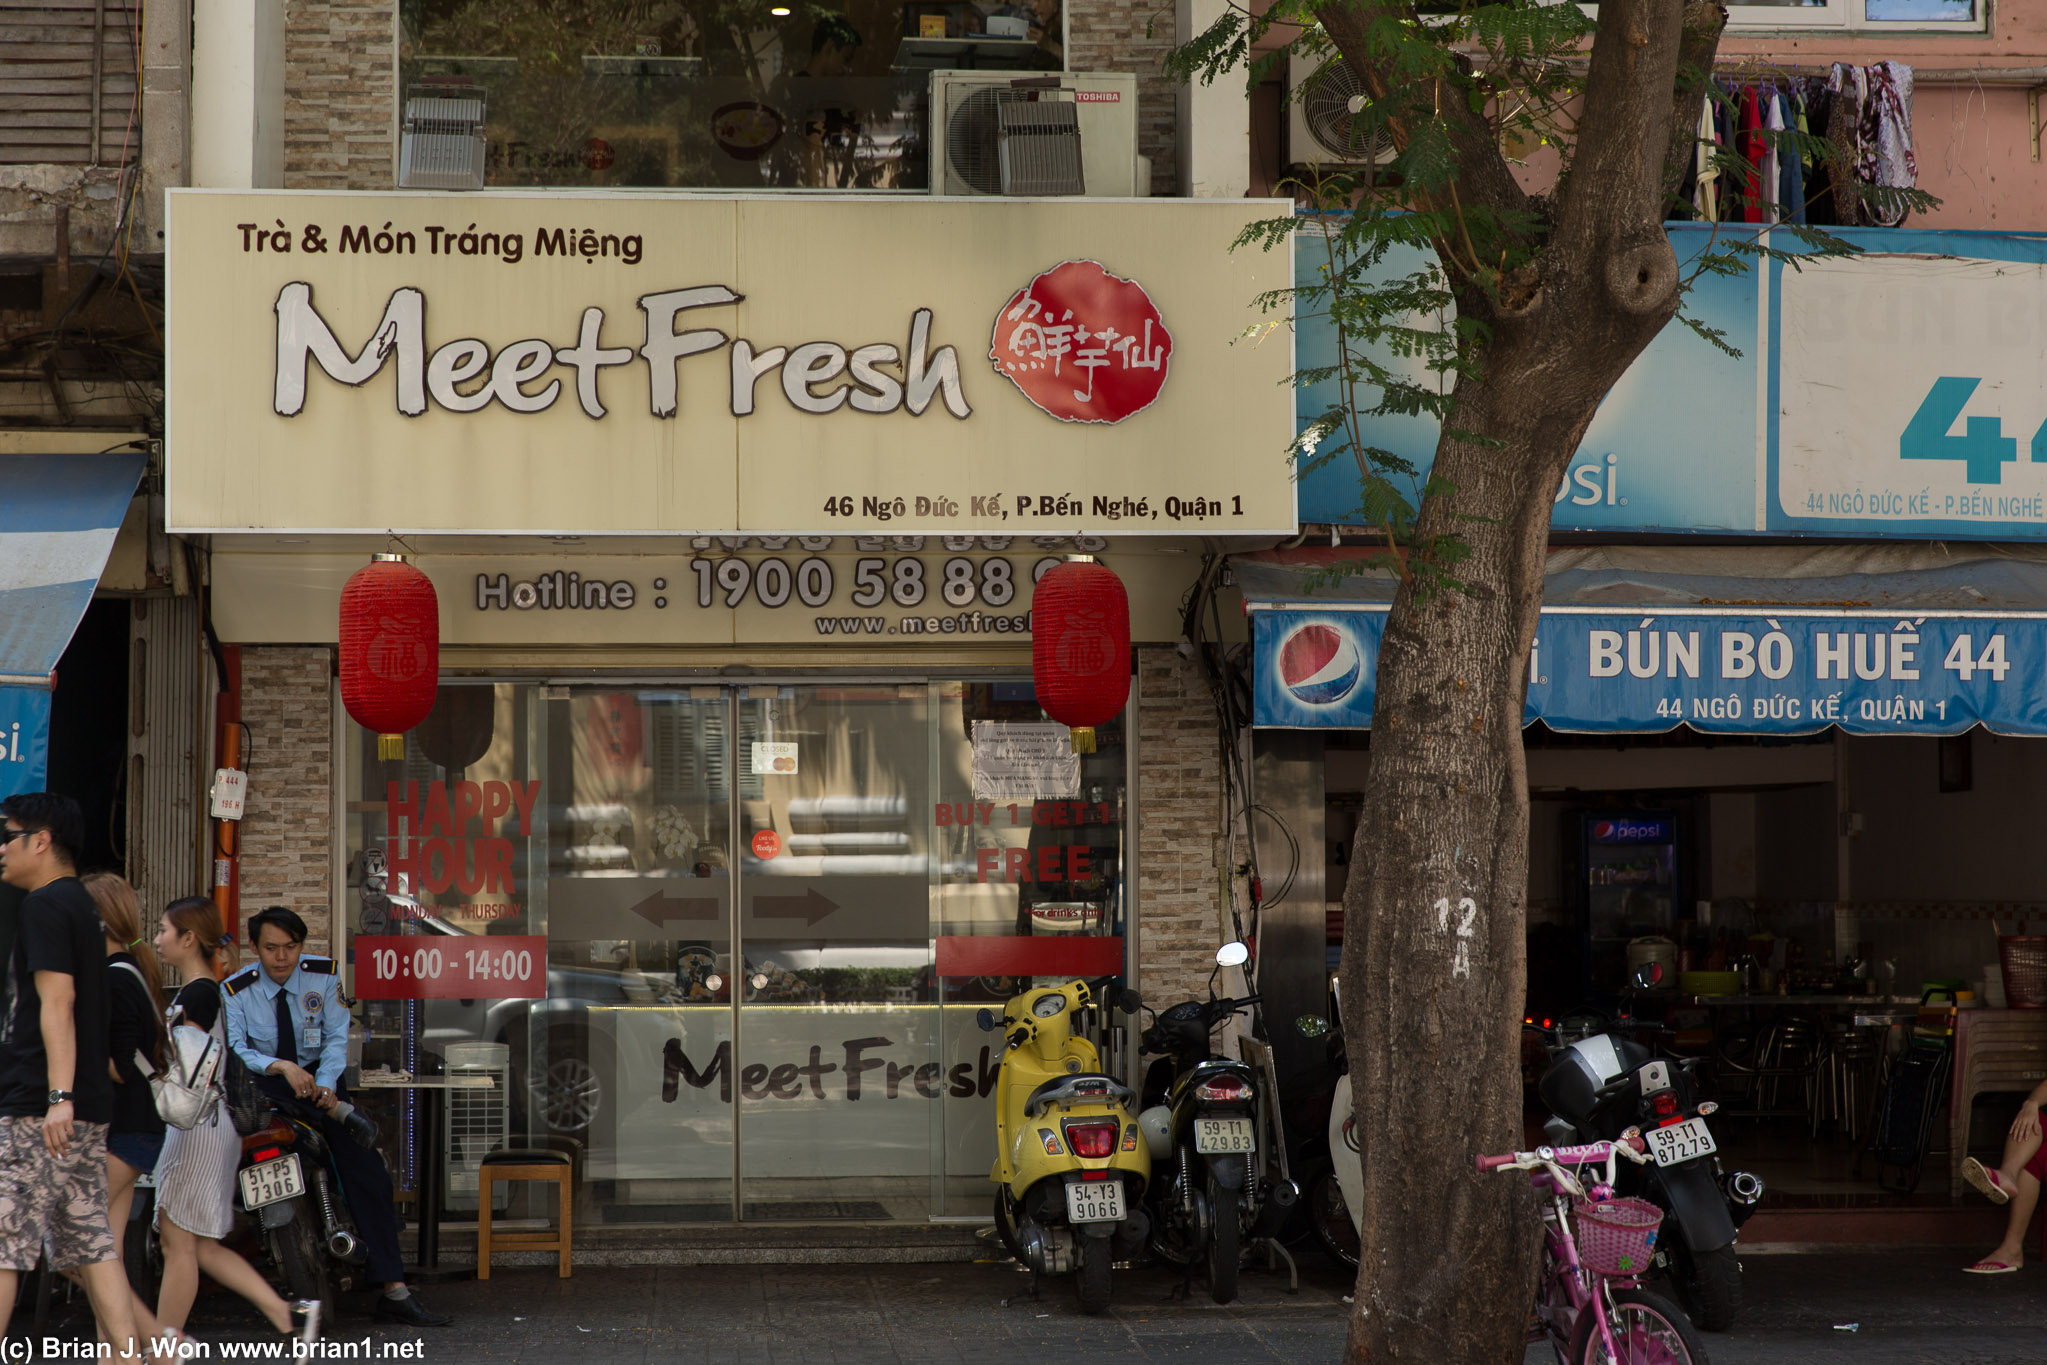 Meet Fresh is in Vietnam, too!